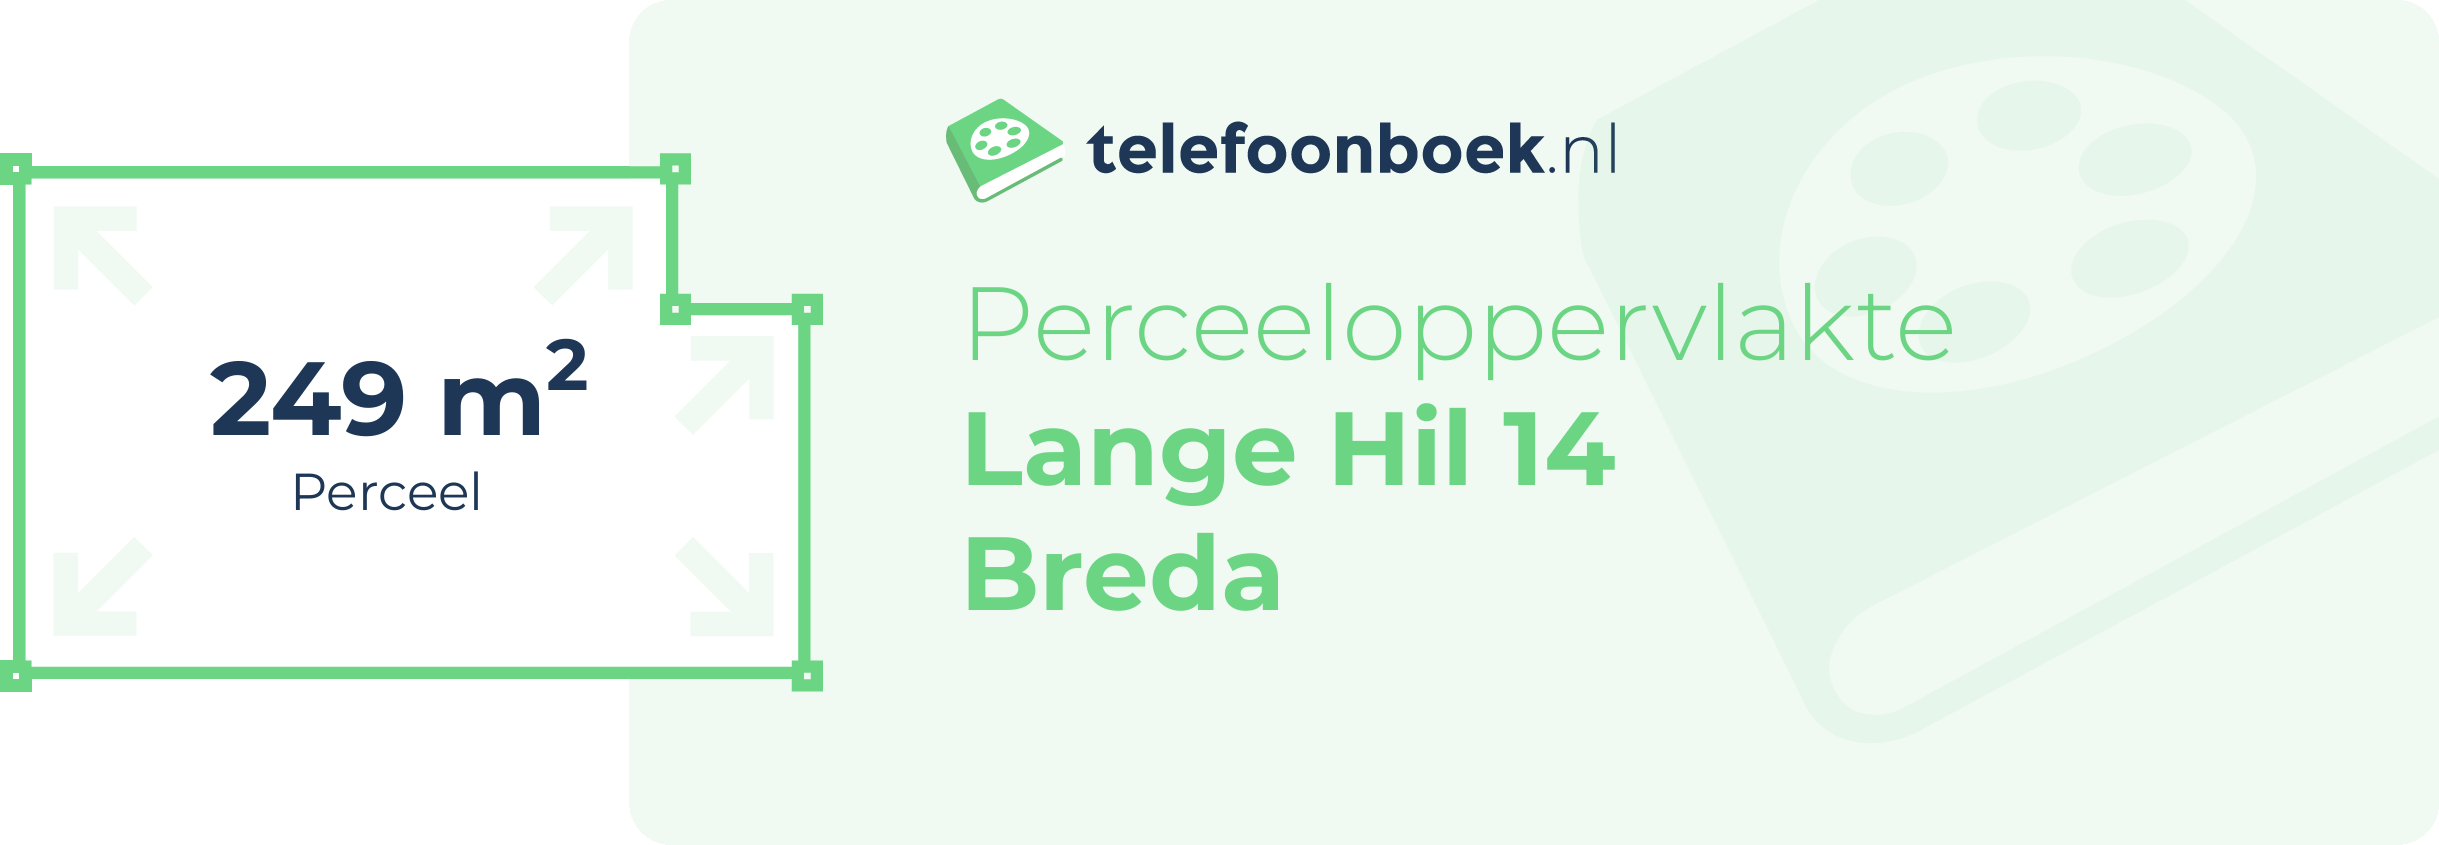 Perceeloppervlakte Lange Hil 14 Breda